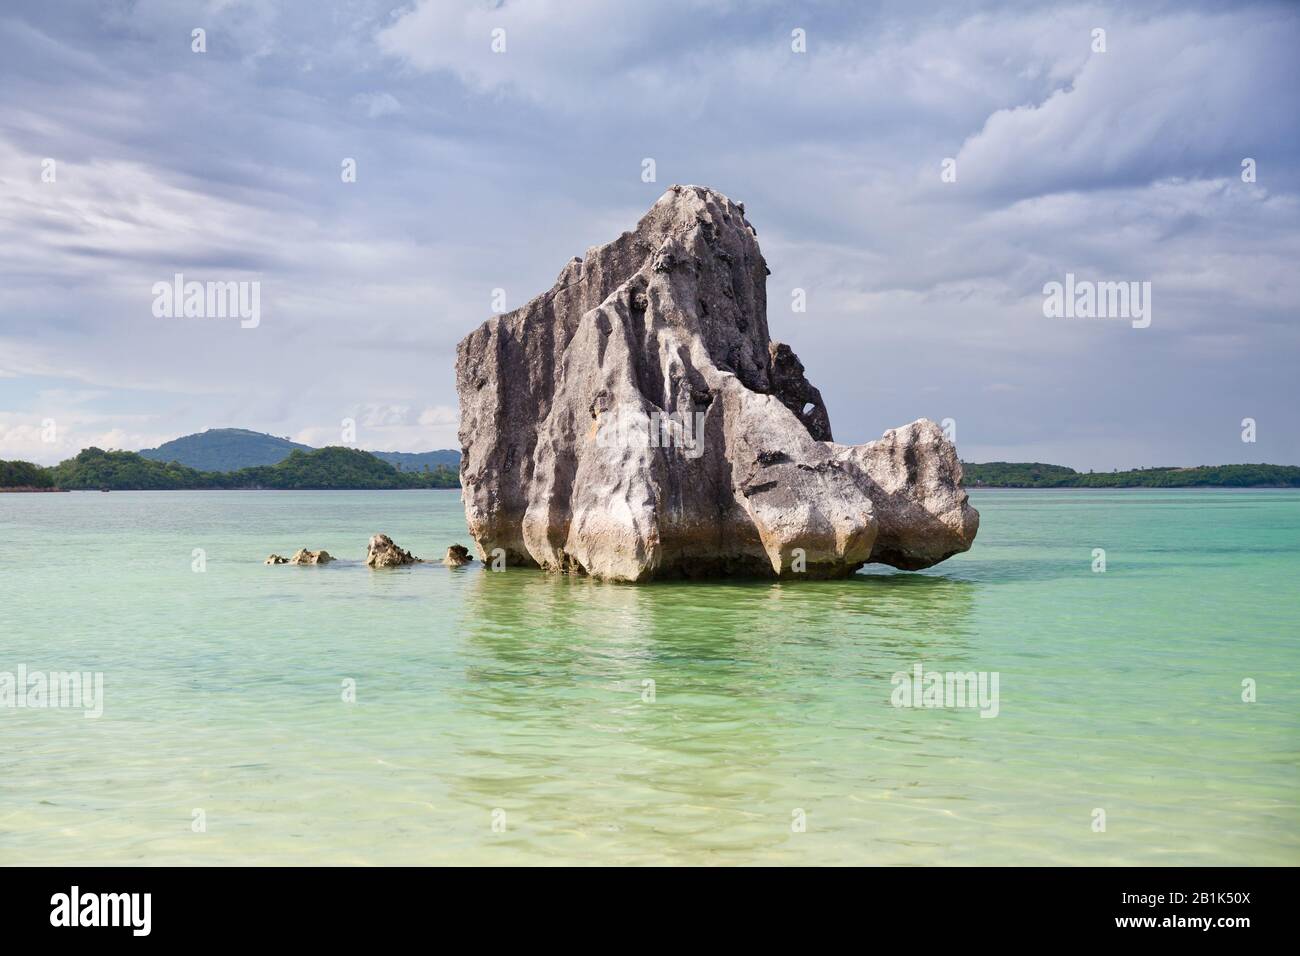 Felsen am Meer auf der Insel Caramoan, Philippinen, Asien. Schöne Seescape. Sommer- und Urlaubskonzept. Stockfoto